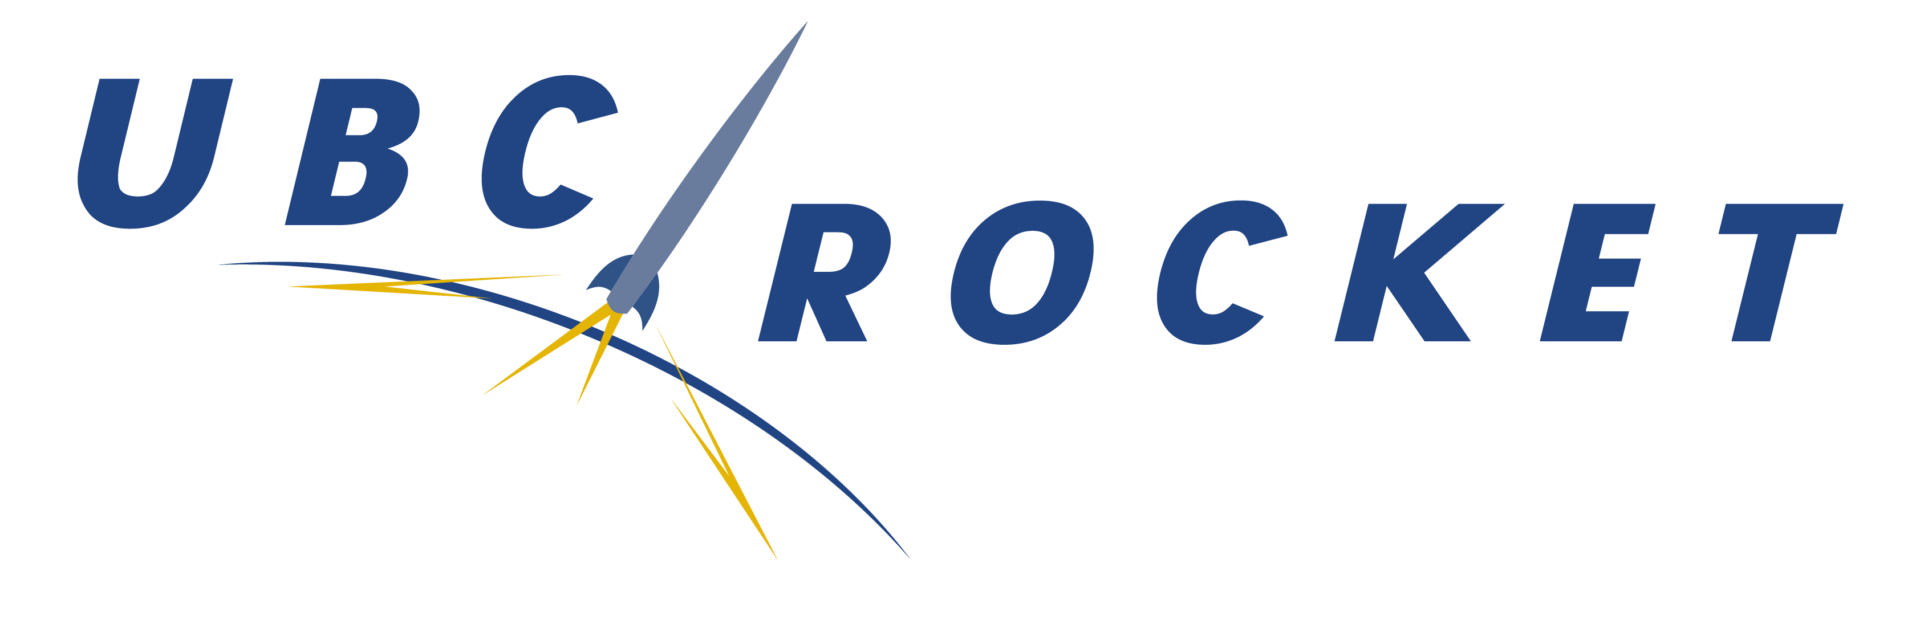 UBCRocket_Logo